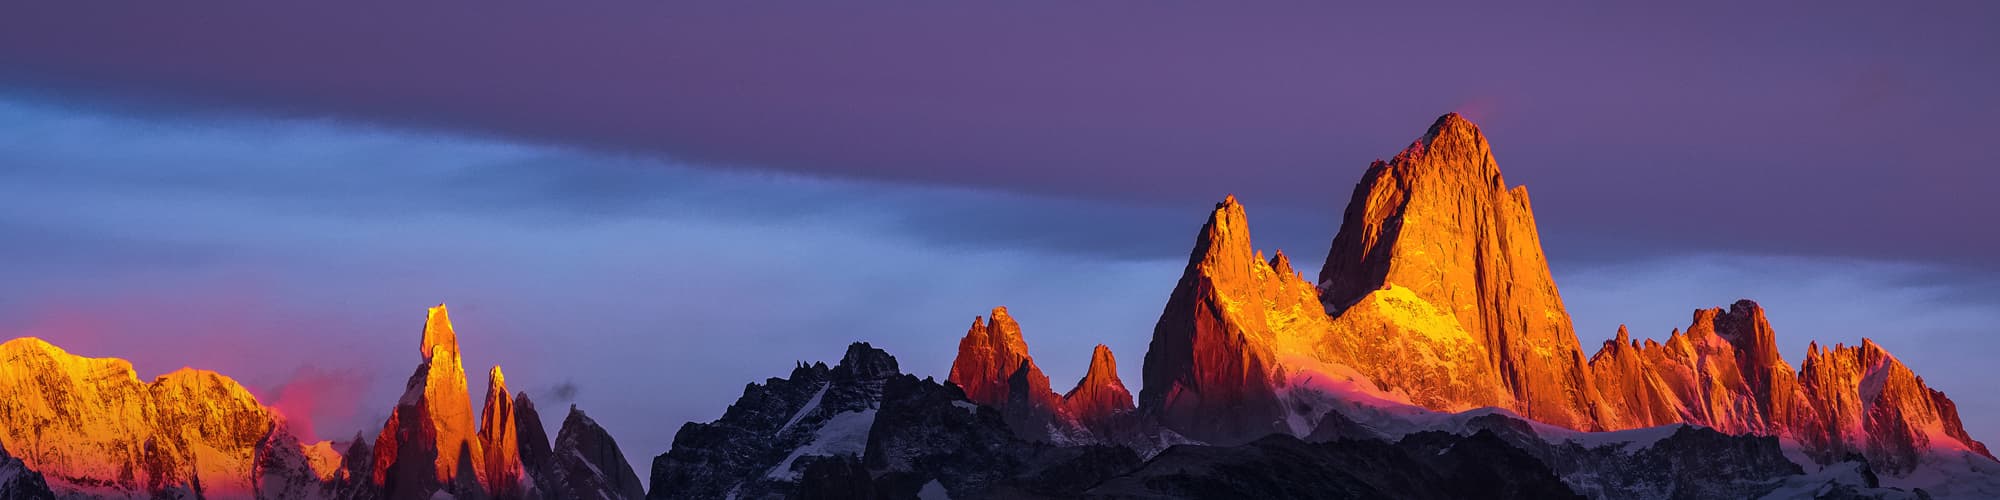 Ascension de l'Aconcagua : voyage et trekking  © Mweber67 / Adobe Stock